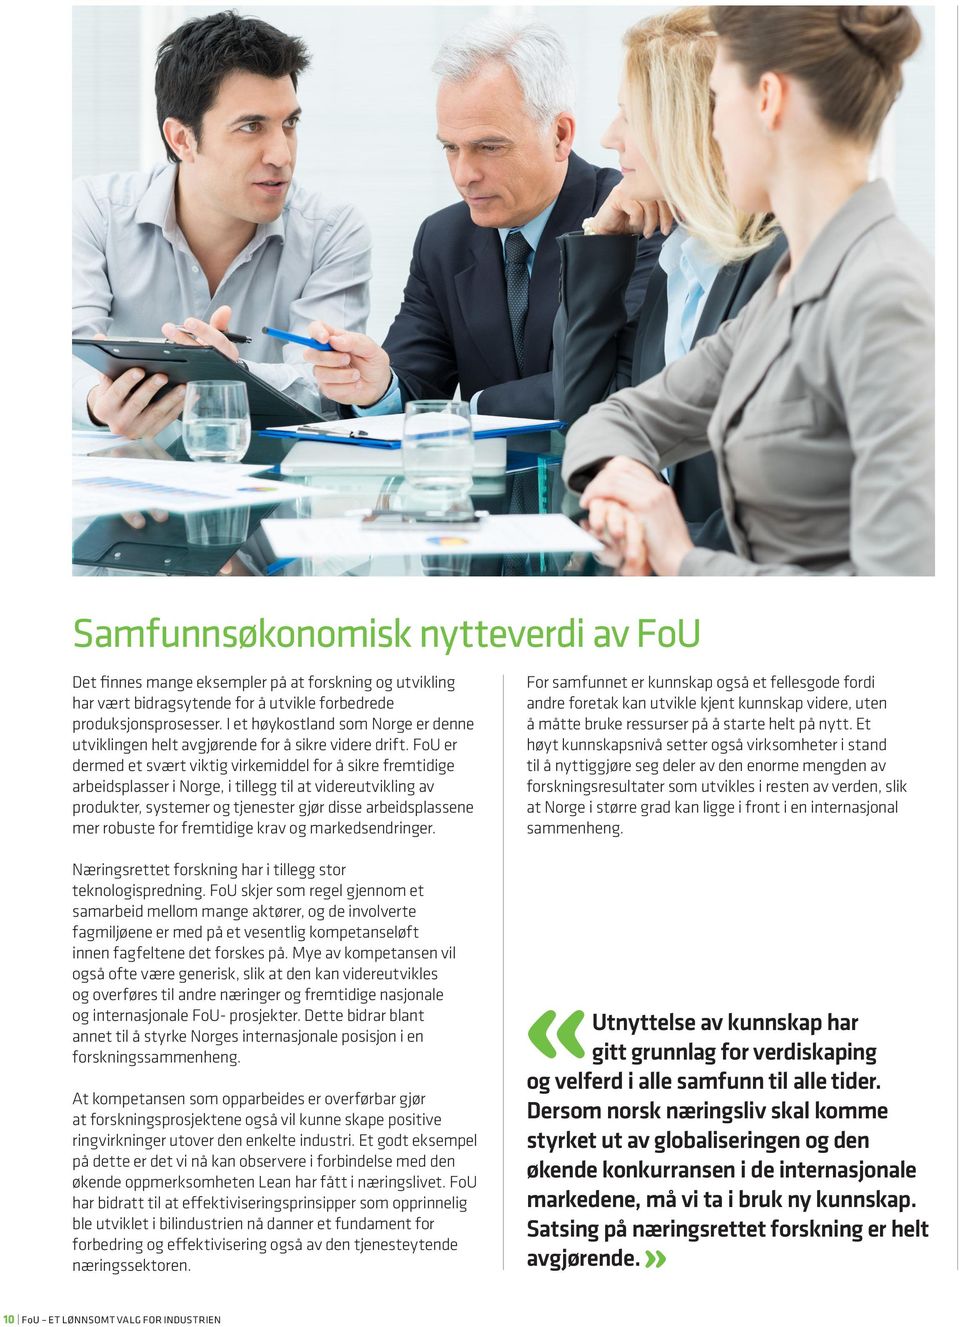 FoU er dermed et svært viktig virkemiddel for å sikre fremtidige arbeidsplasser i Norge, i tillegg til at videreutvikling av produkter, systemer og tjenester gjør disse arbeidsplassene mer robuste